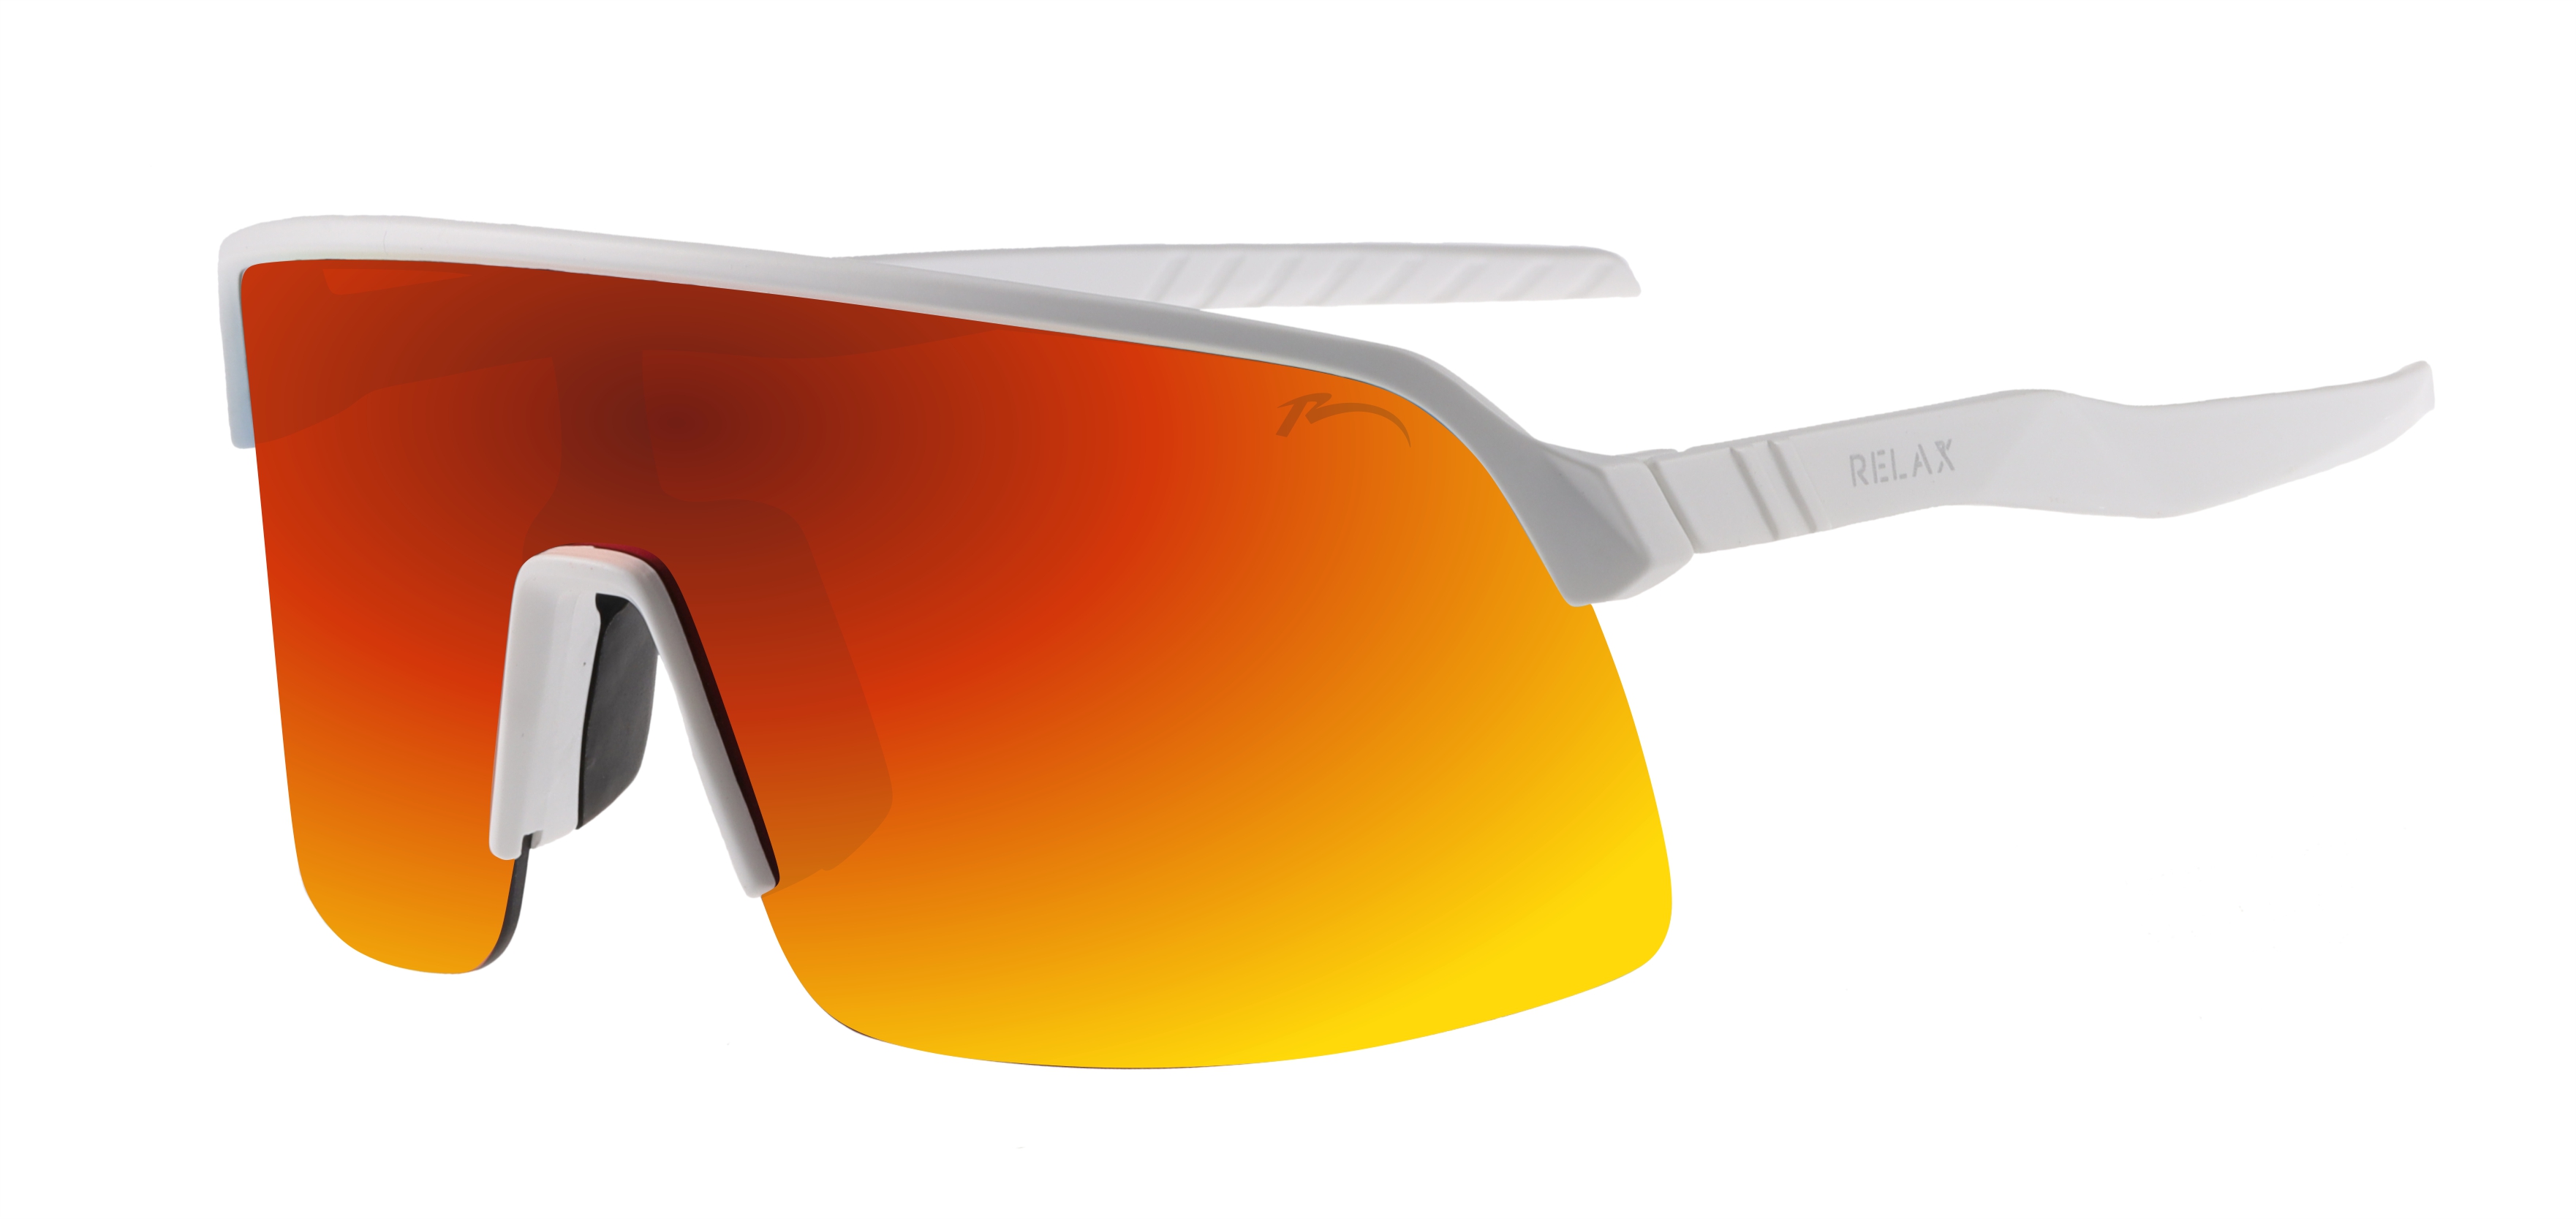 Sportovní sluneční brýle Relax Judo R5430A - standard